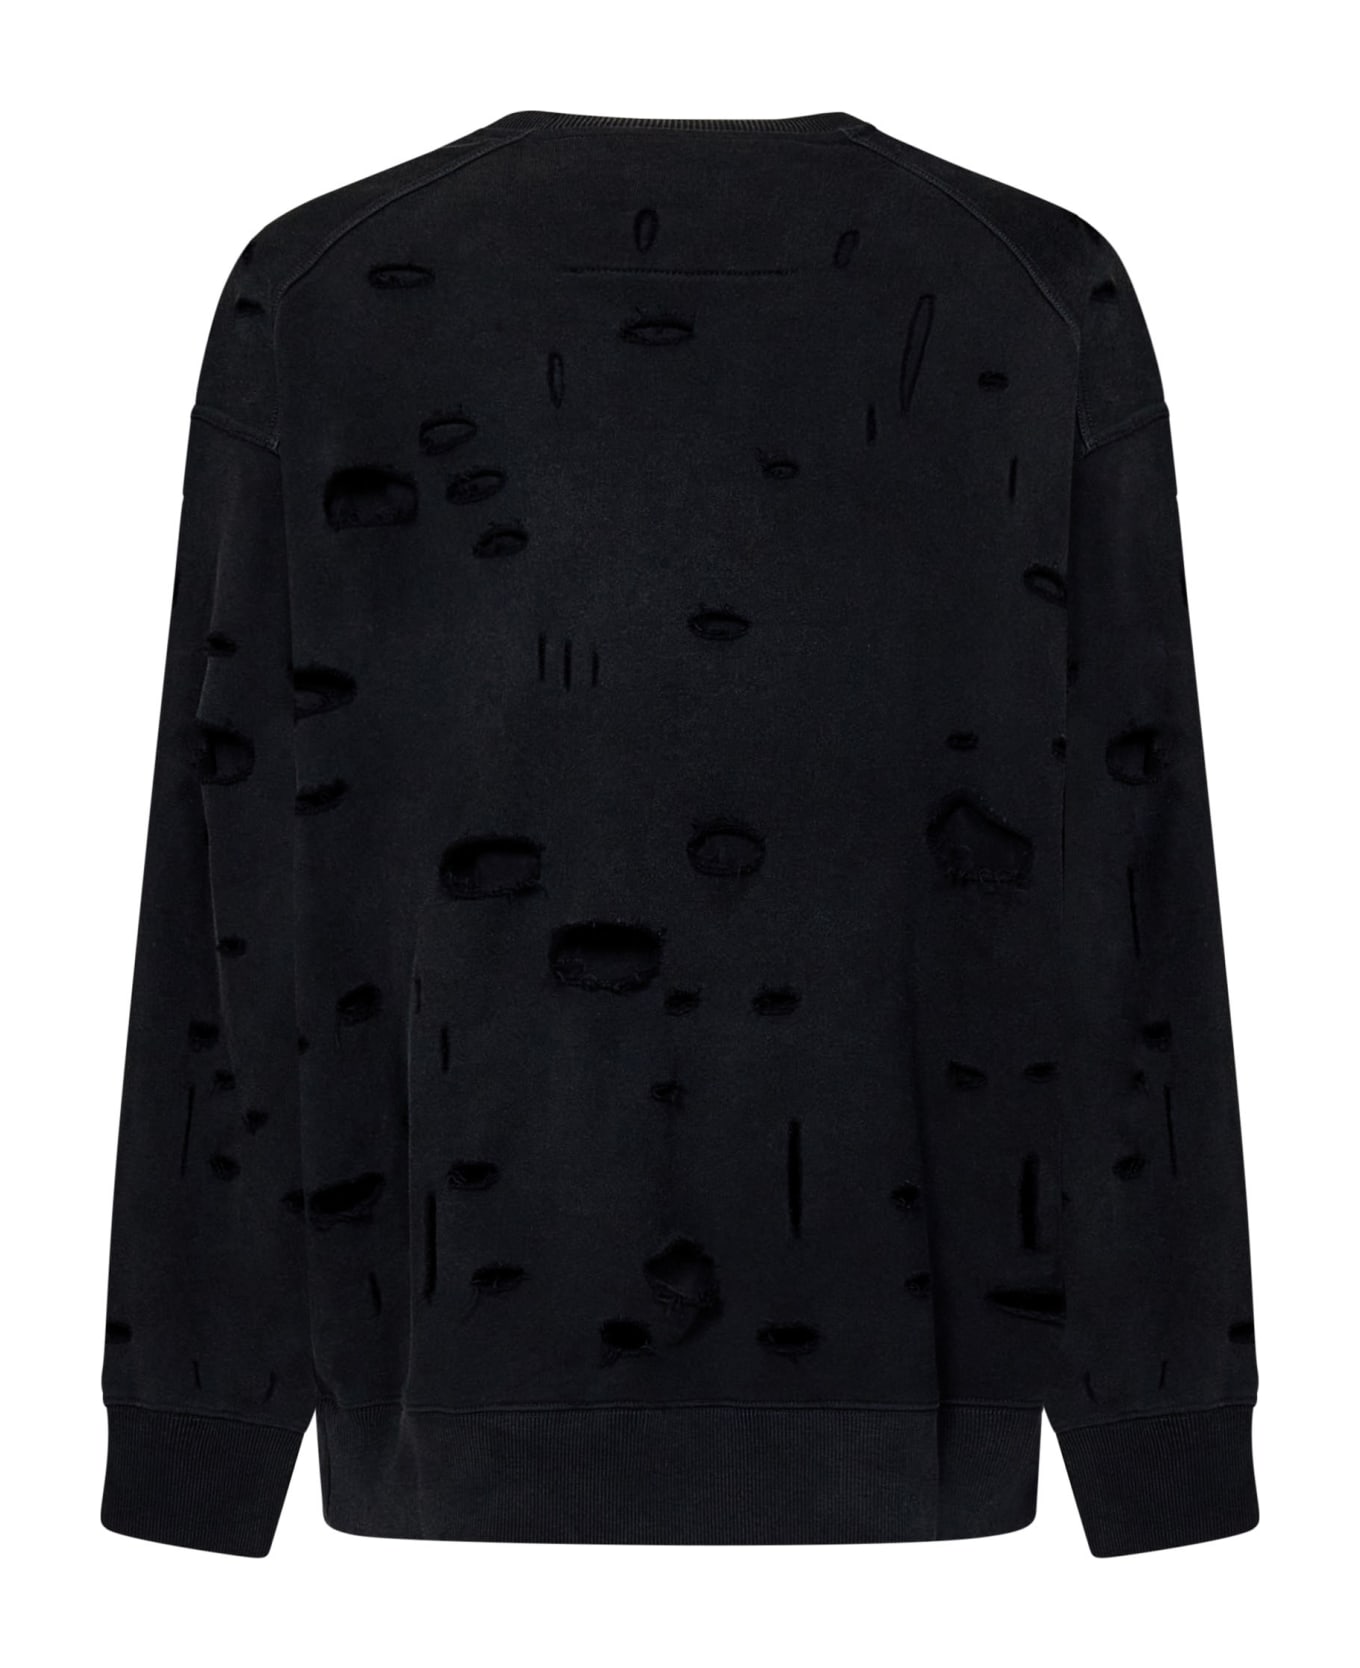 Givenchy Oversized Holes Sweatshirt - Black フリース